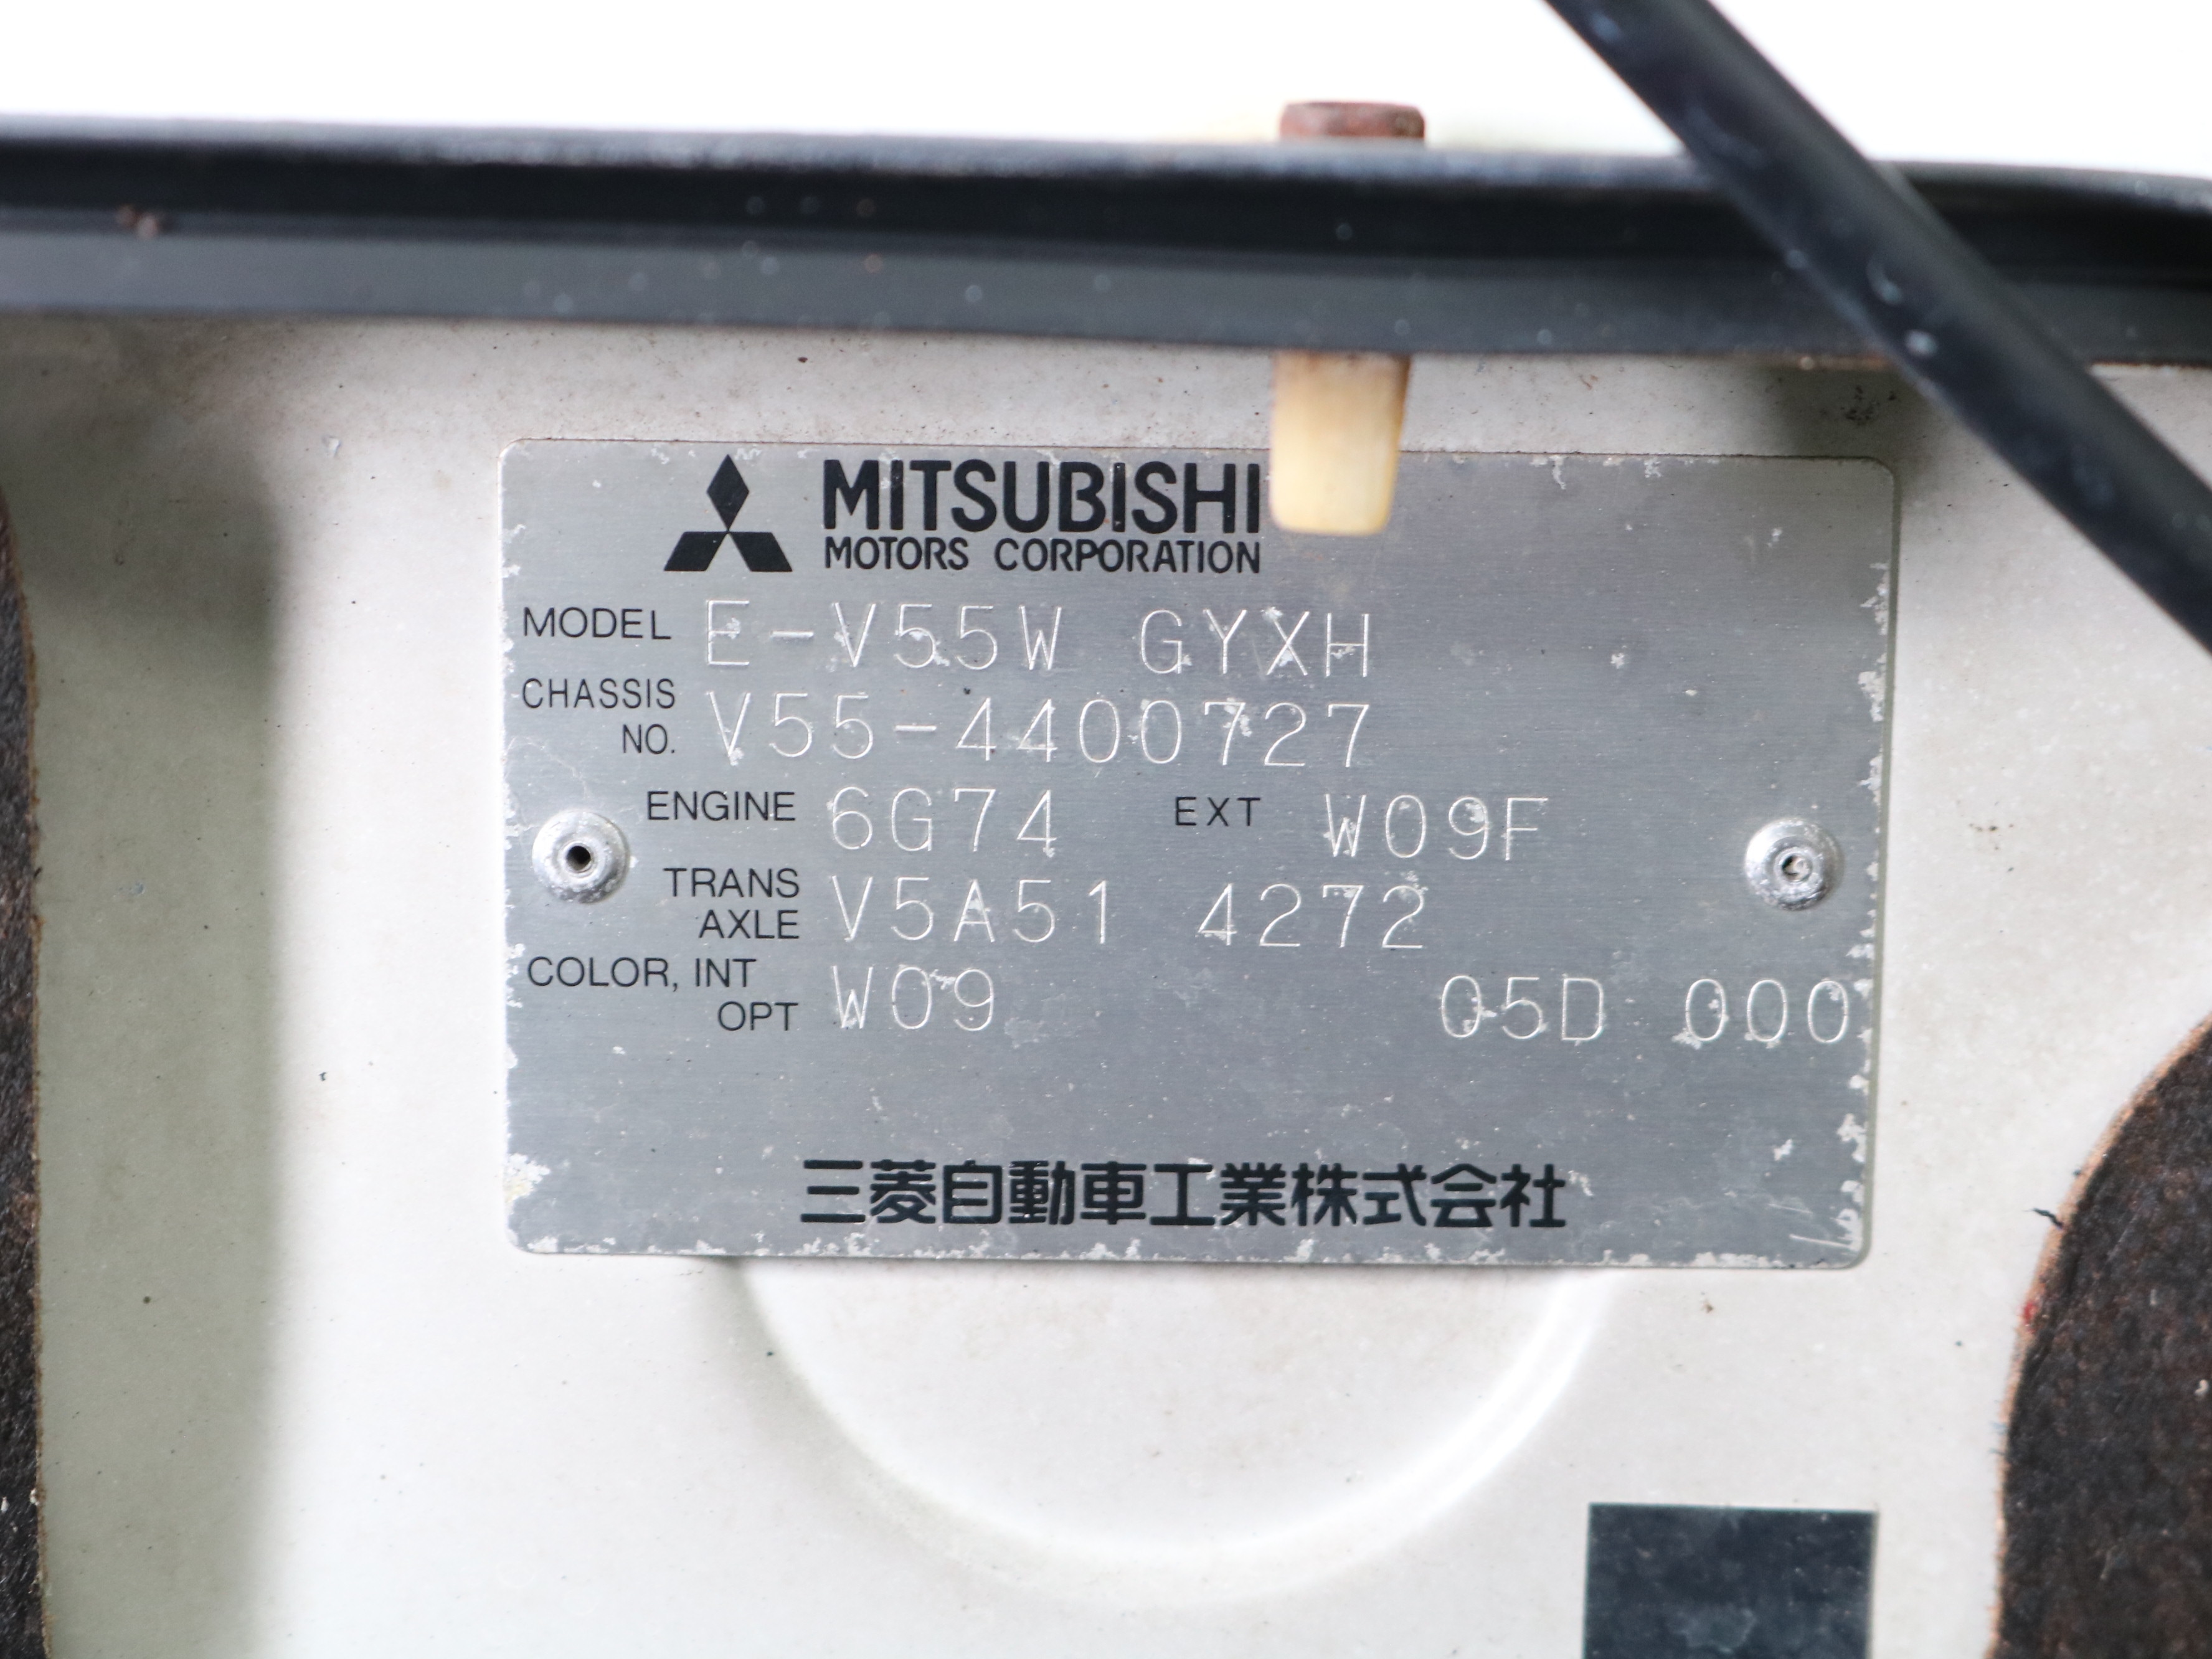 1997 Mitsubishi Pajero 56